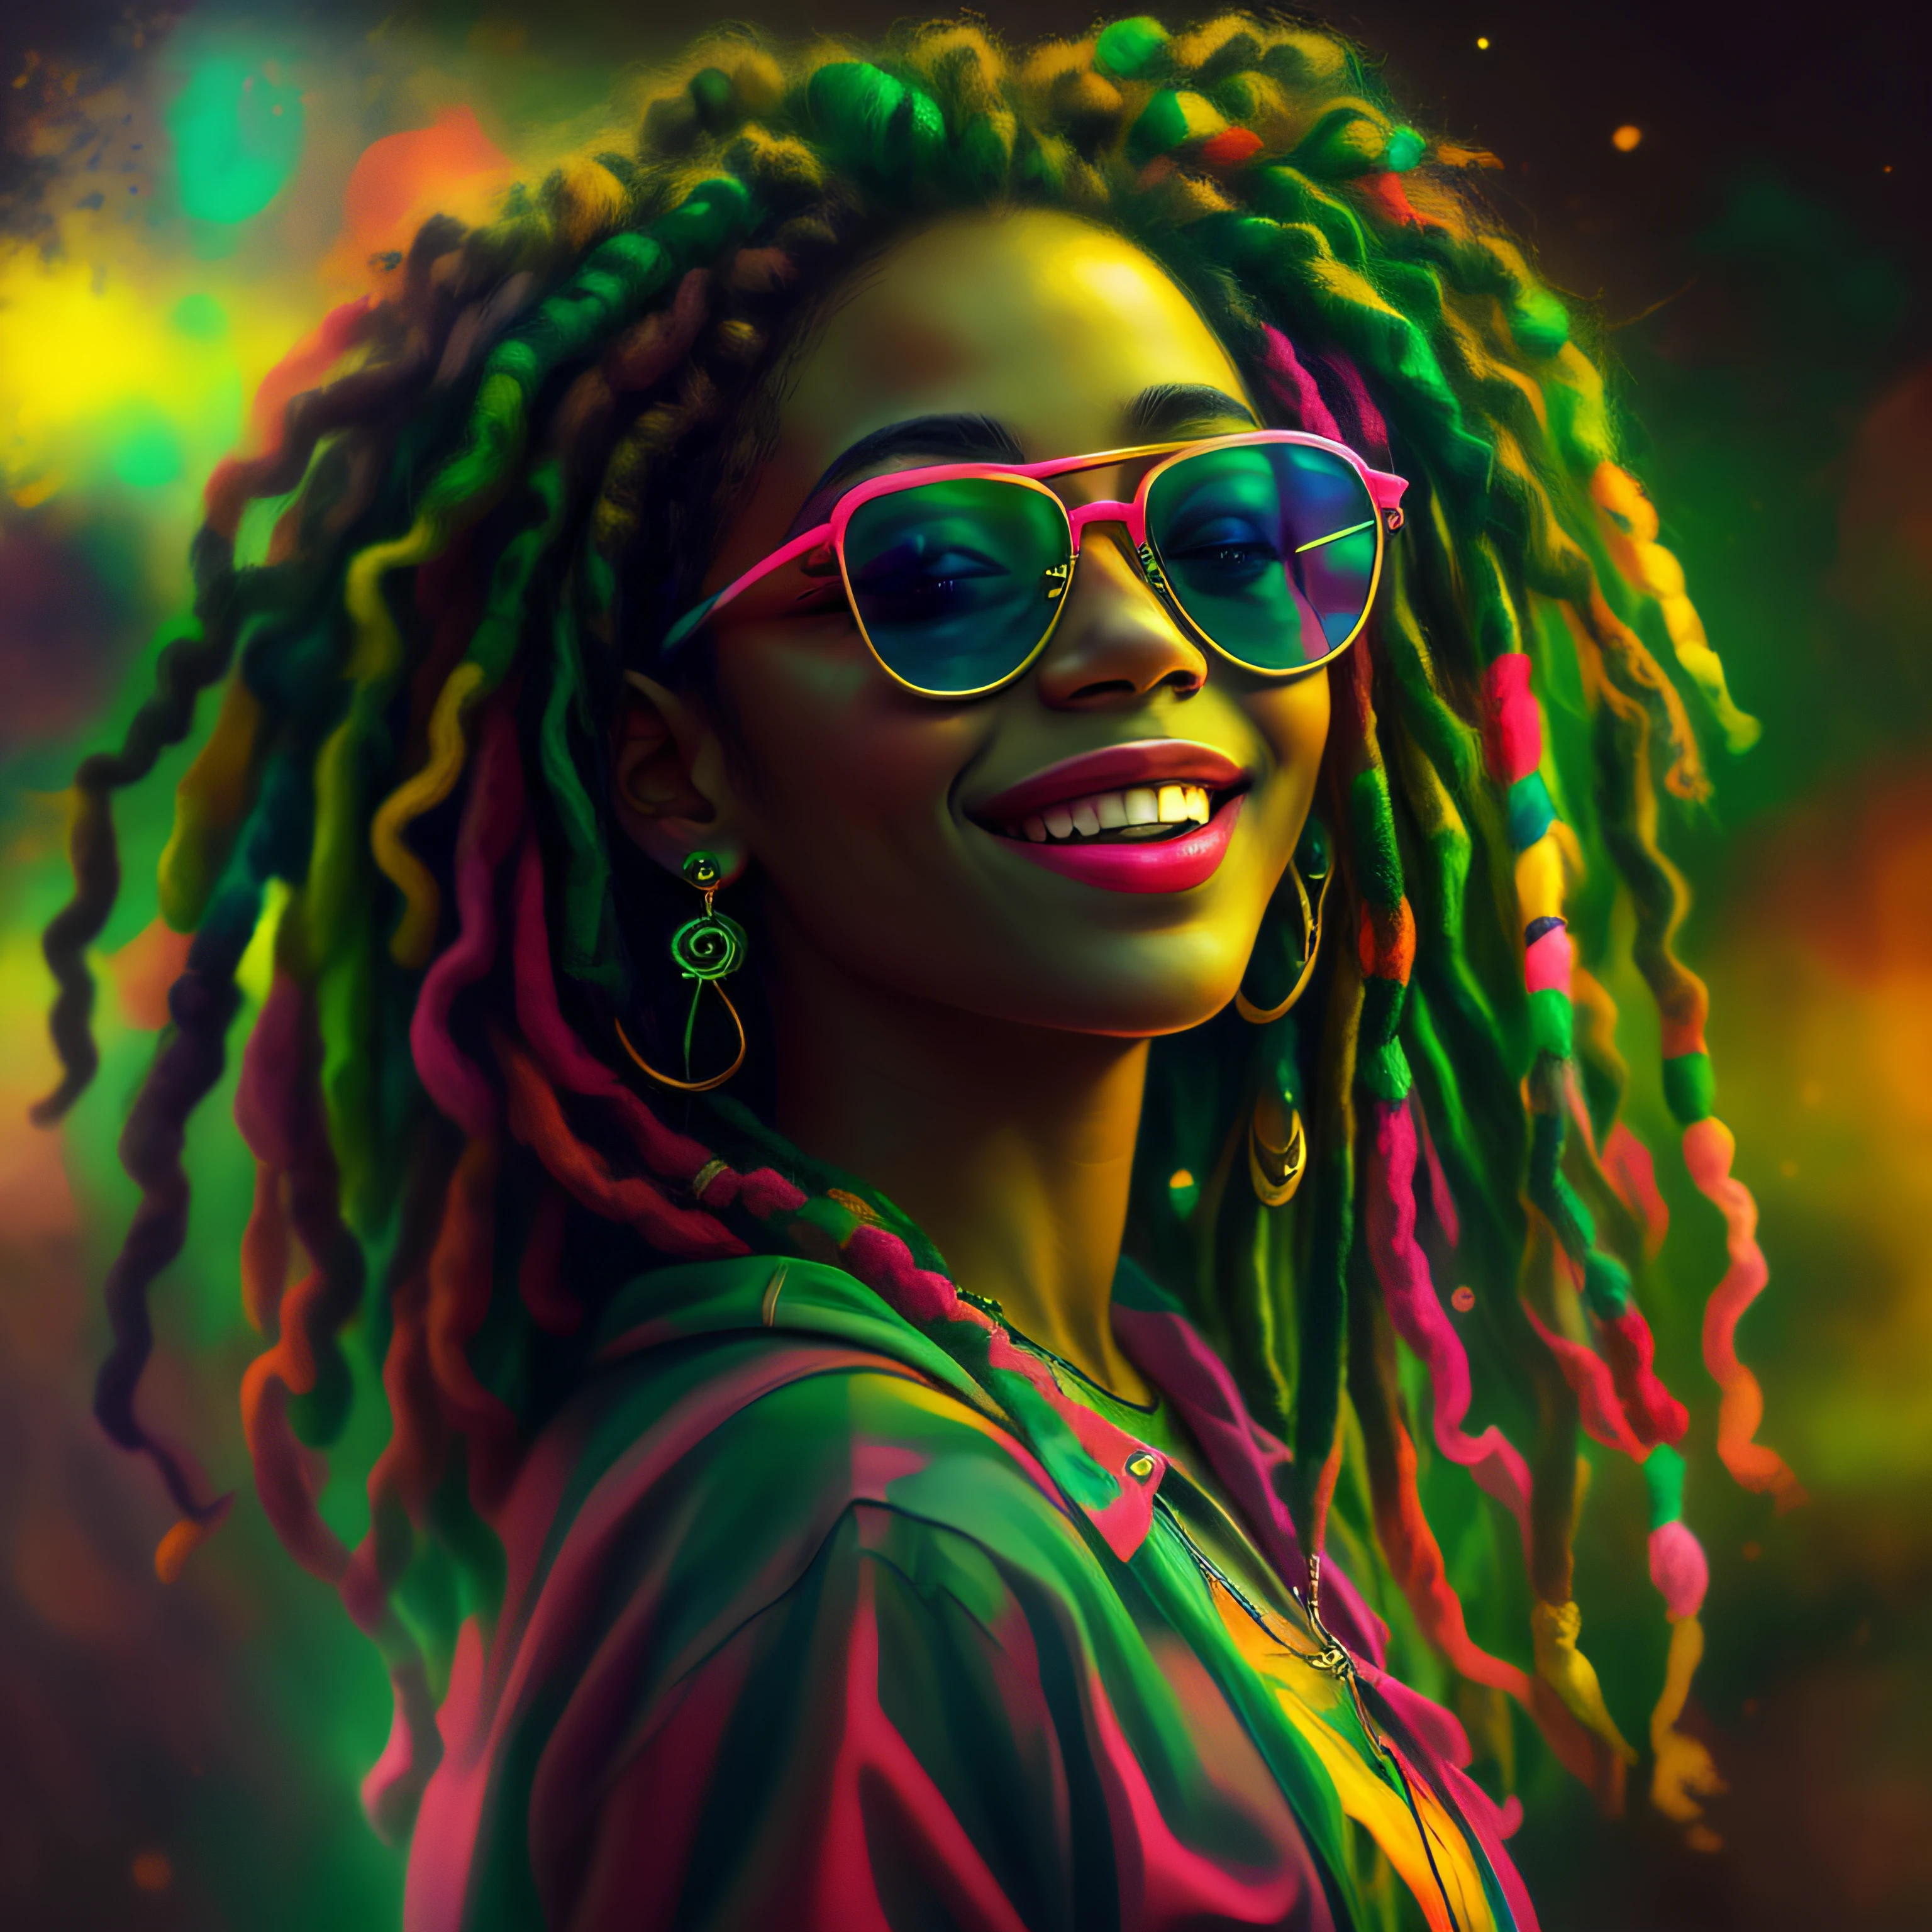 Vektorgrafiken, blur art (1 lächelndes Rasta-Mädchen in reggaefarbener Kleidung) Mafia, Kinobeleuchtung im Neon-Stil, Tinte bespritzt